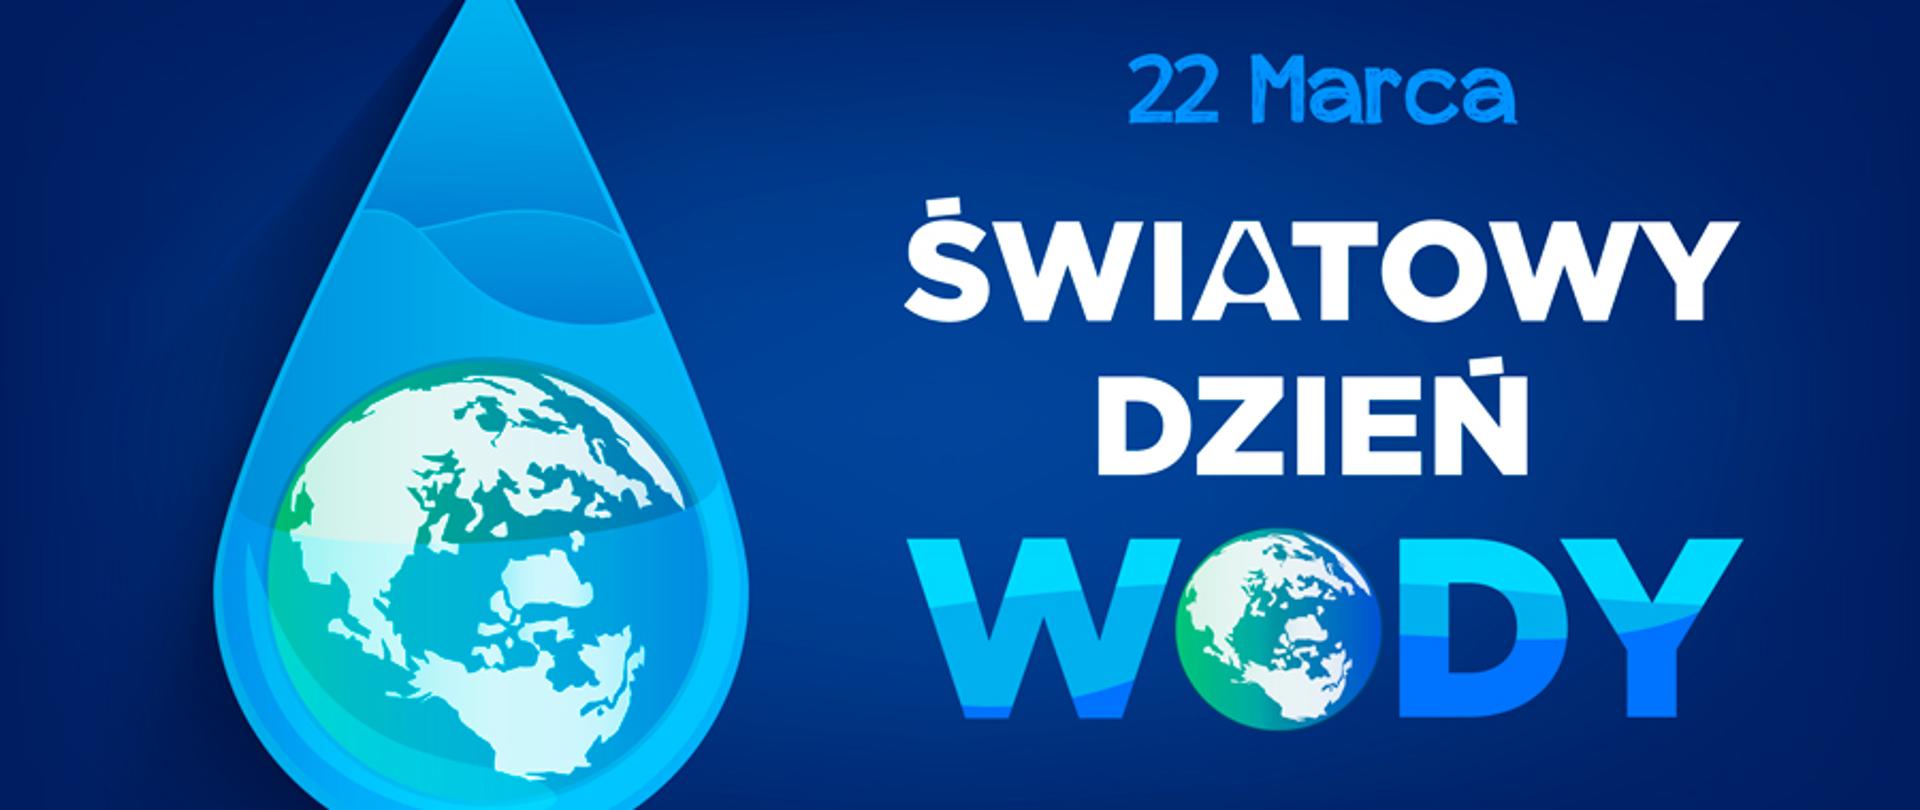 22 marca Światowy Dzień wody - napis oraz kula ziemska umieszona w w kropli wody